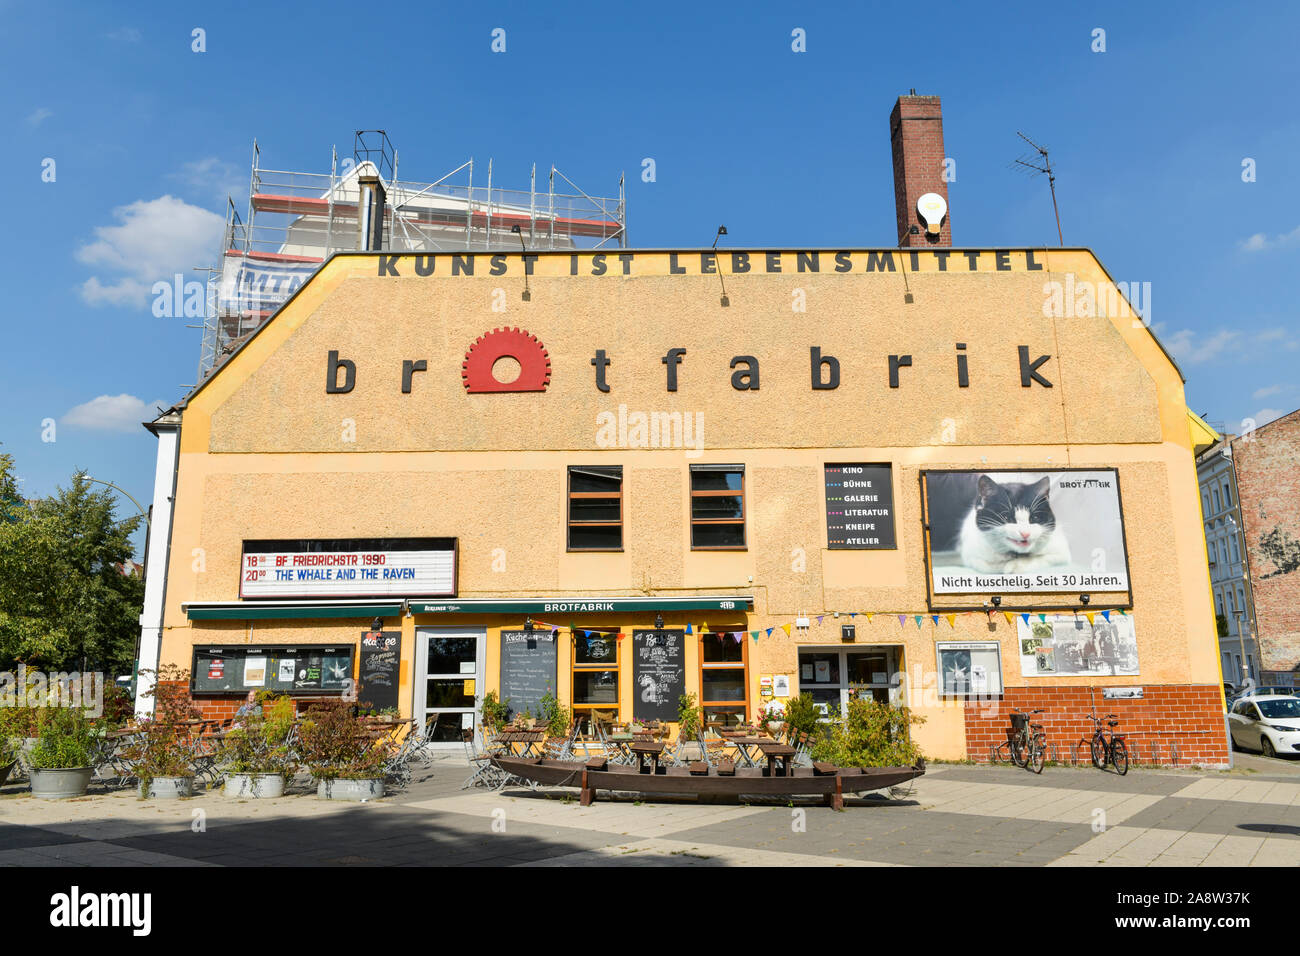 Kunst- und Kulturzentrum Brotfabrik, Caligariplatz, Weißensee, Pankow, Berlin, Deutschland Stock Photo